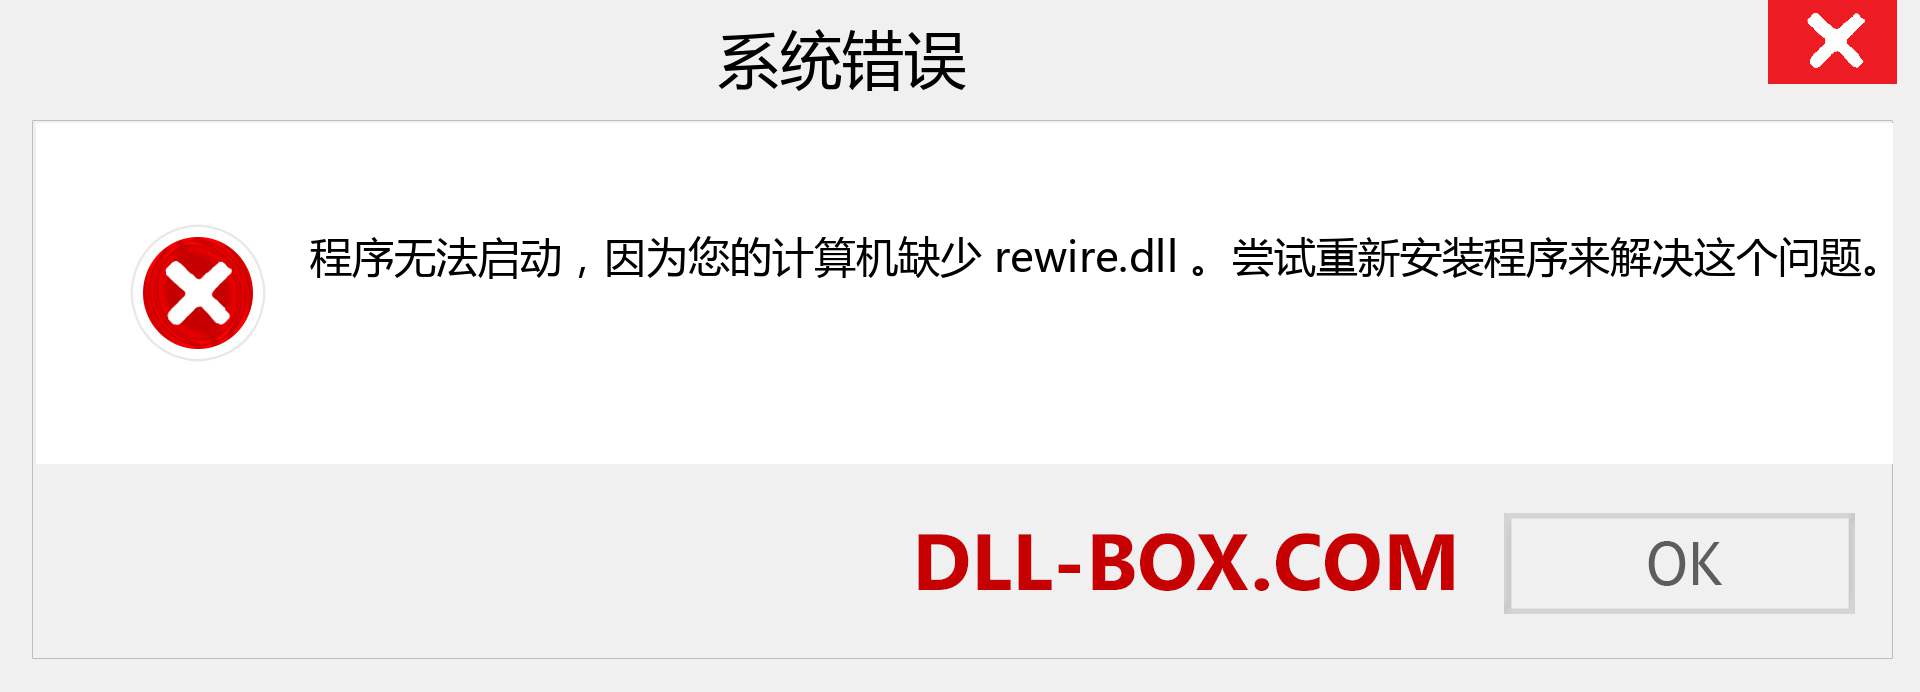 rewire.dll 文件丢失？。 适用于 Windows 7、8、10 的下载 - 修复 Windows、照片、图像上的 rewire dll 丢失错误